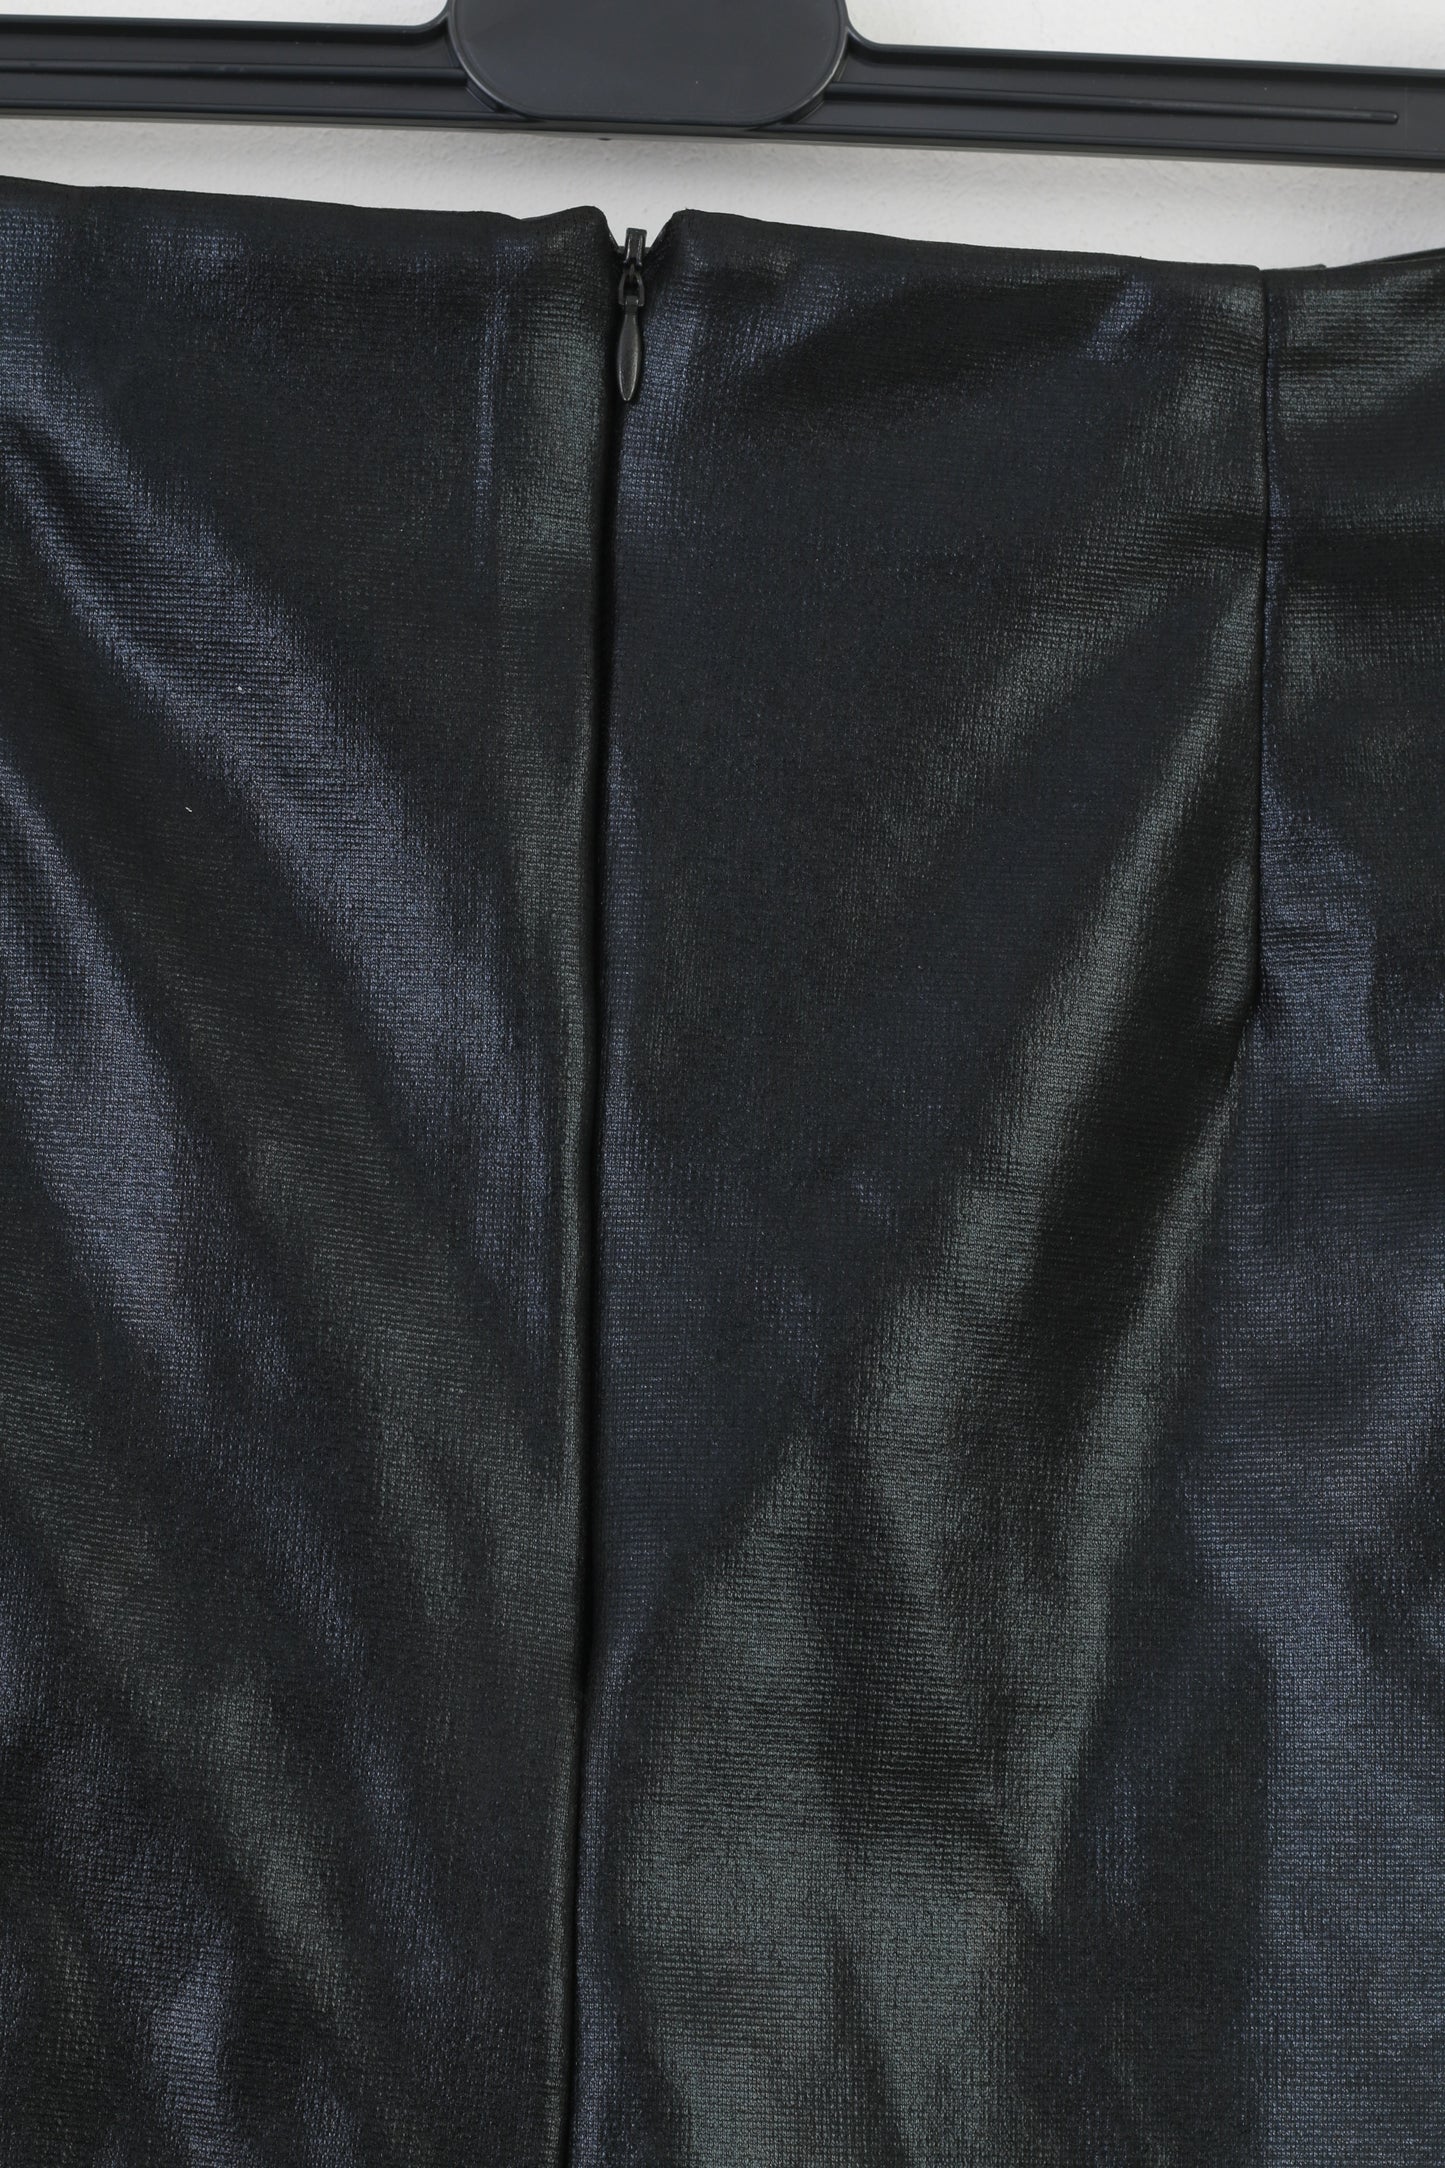 Jupe mi-longue noire avec fermeture éclair pour femme, vêtements de tous les jours, haut brillant